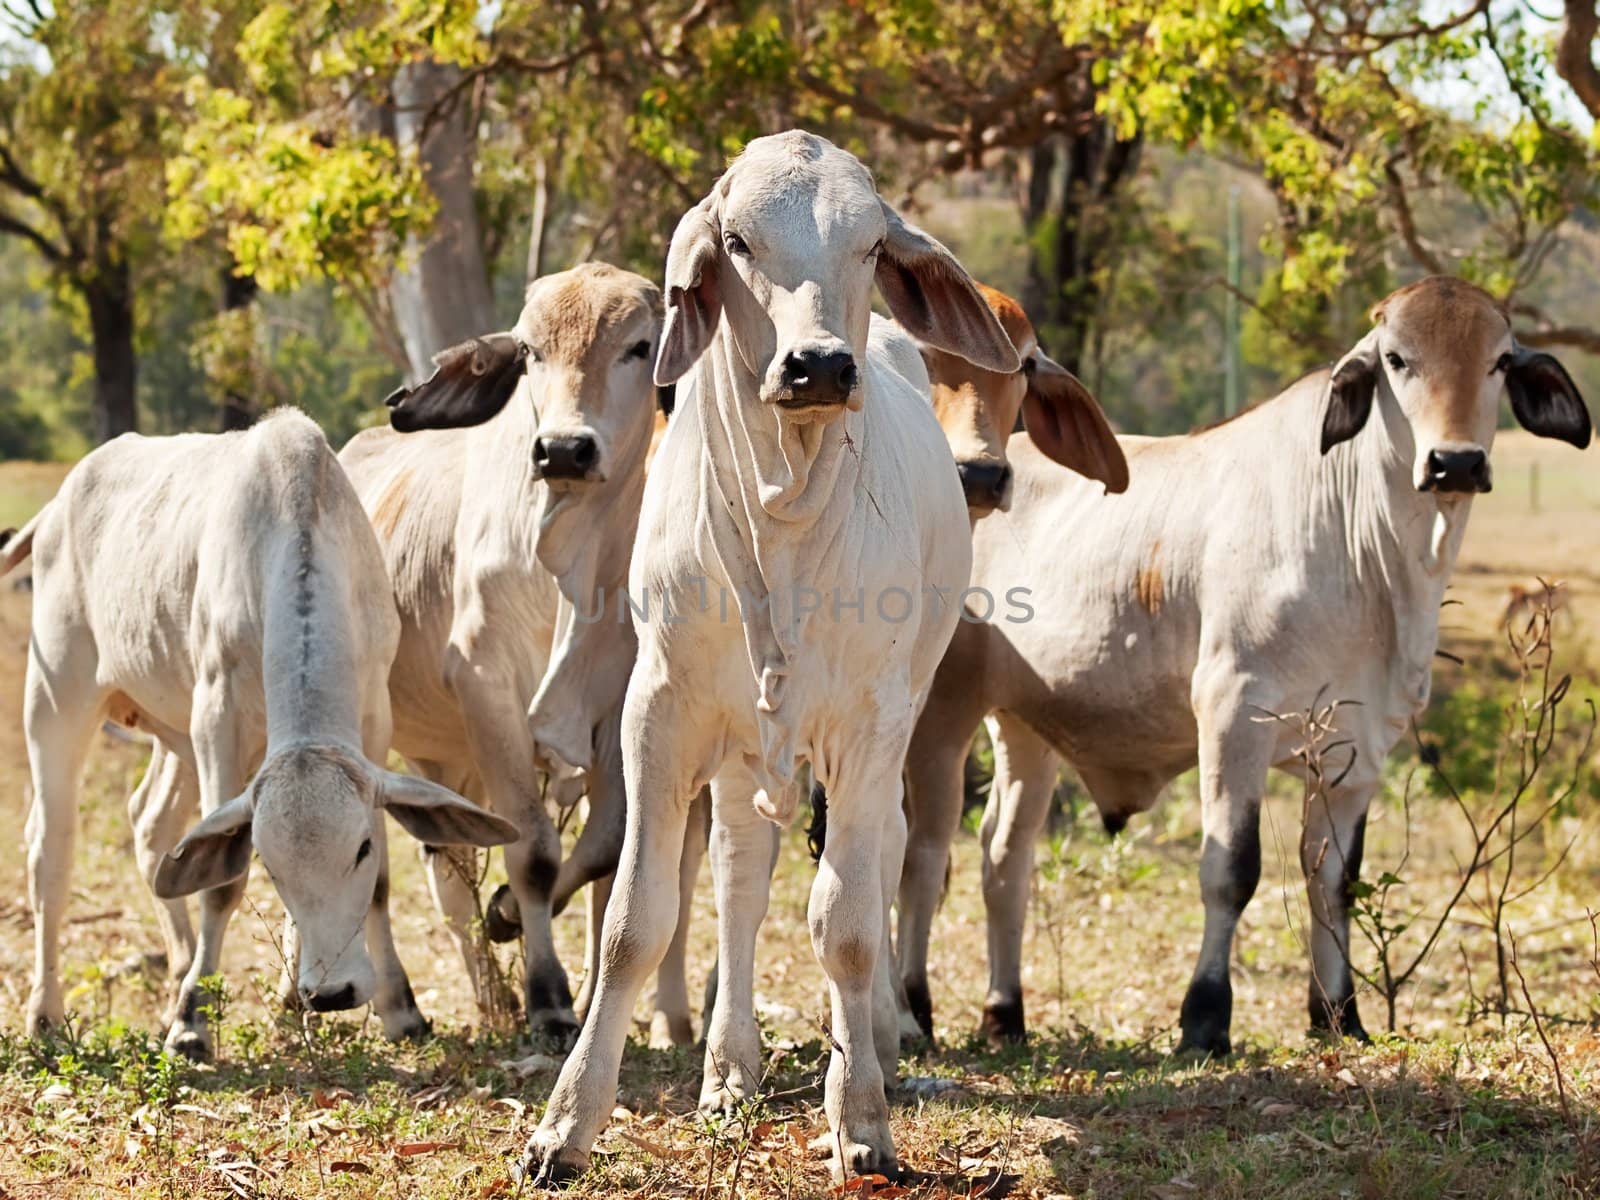 Young Brahman herd on ranch Australian beef cattle  by sherj